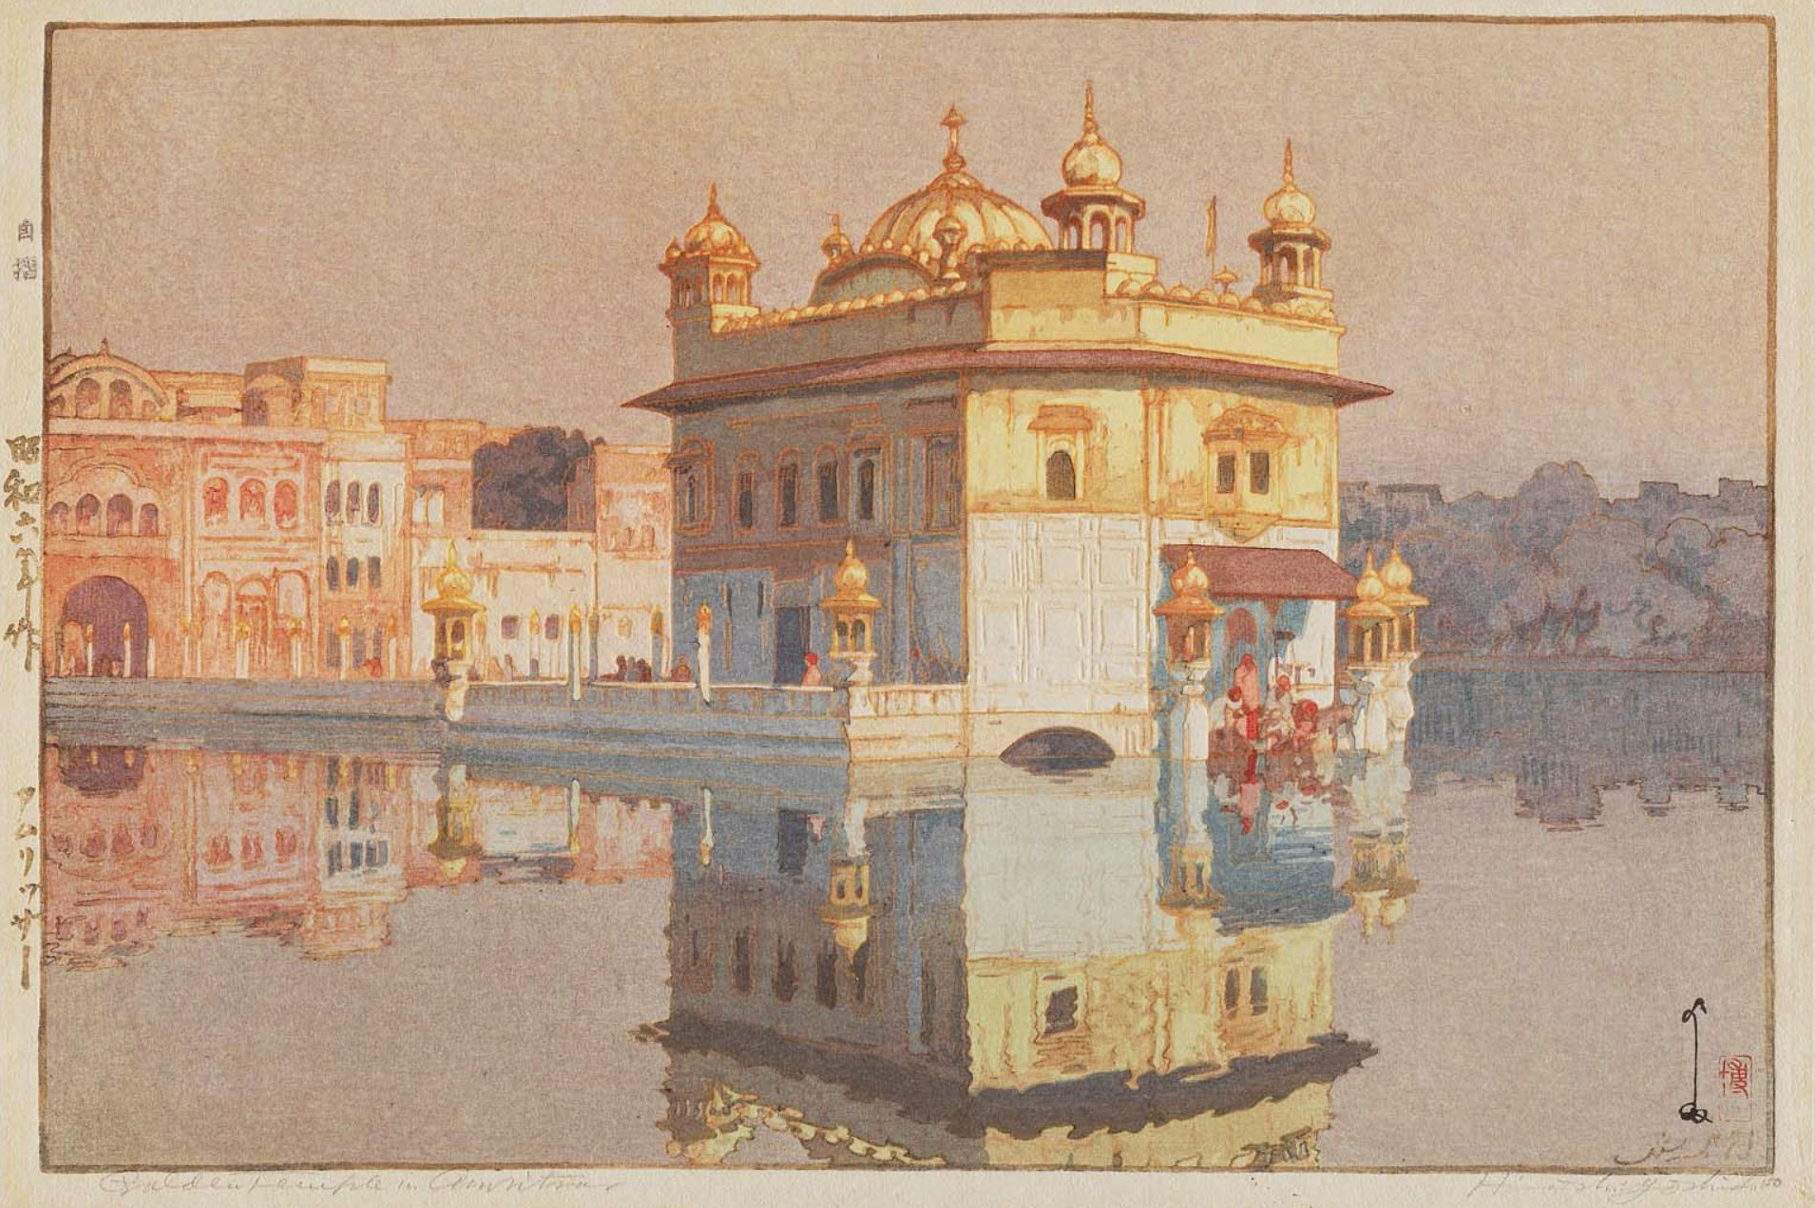 Hiroshi Yoshida “Golden Temple in Amritsar” 1931 woodblock print